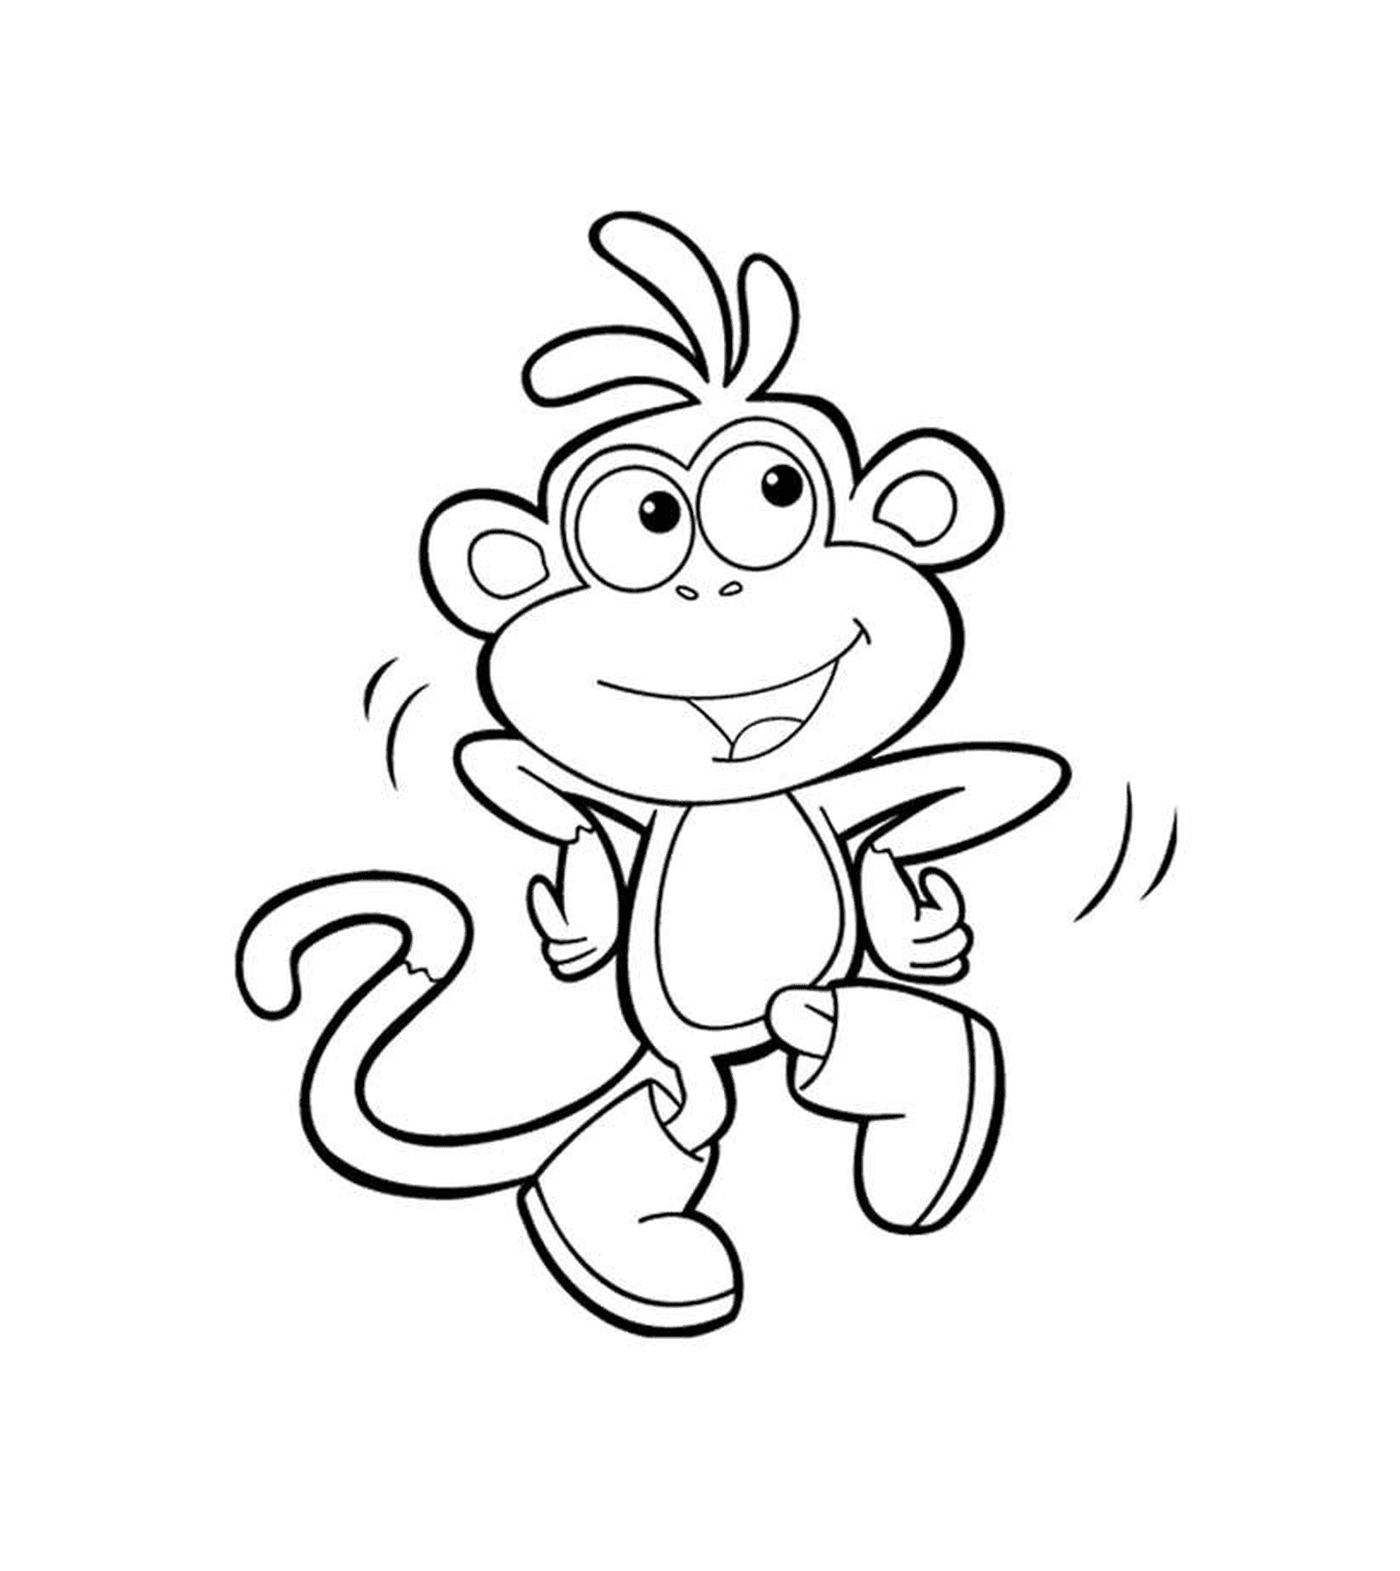  Macaco de Dora, o explorador salta no ar 